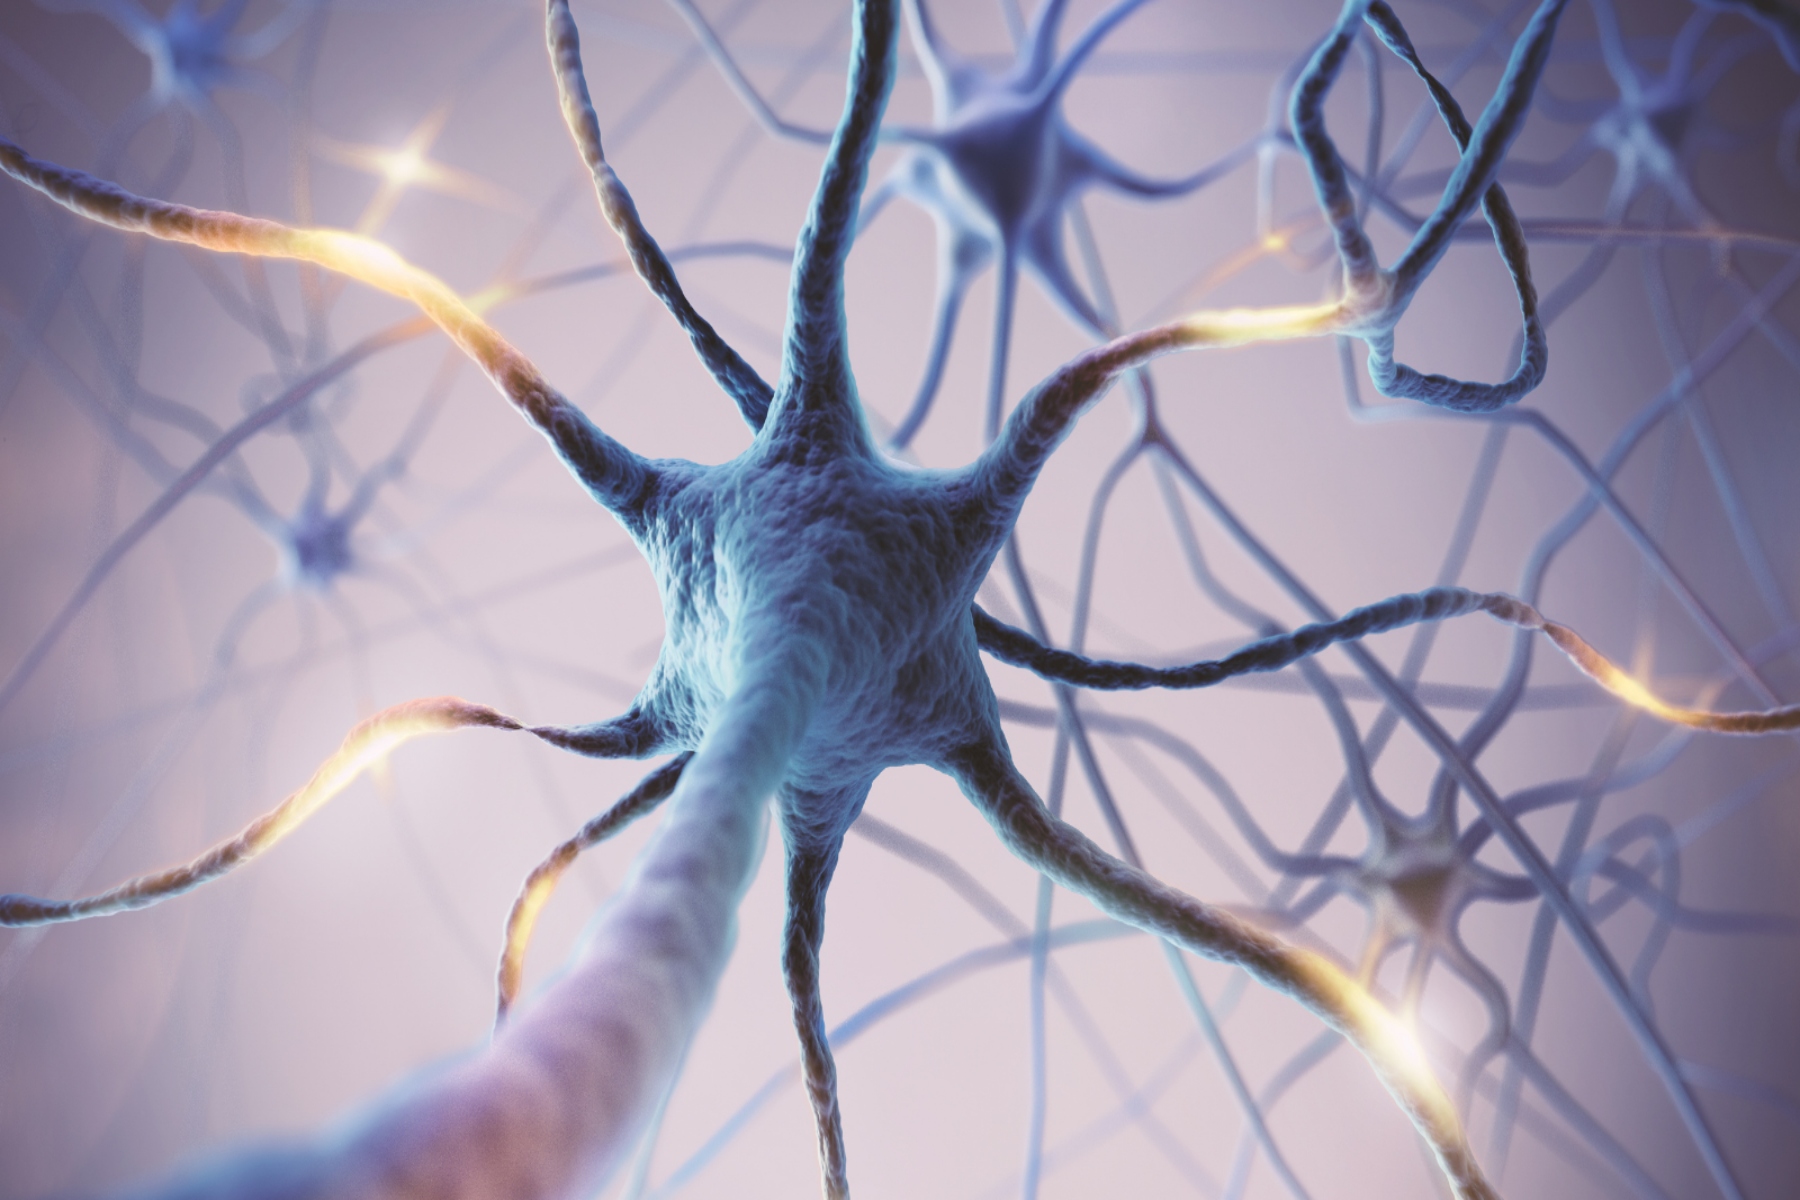 Νευρωνικό μοντέλο ανοίγει το δρόμο για νέες θεραπείες για το Αλτσχάιμερ